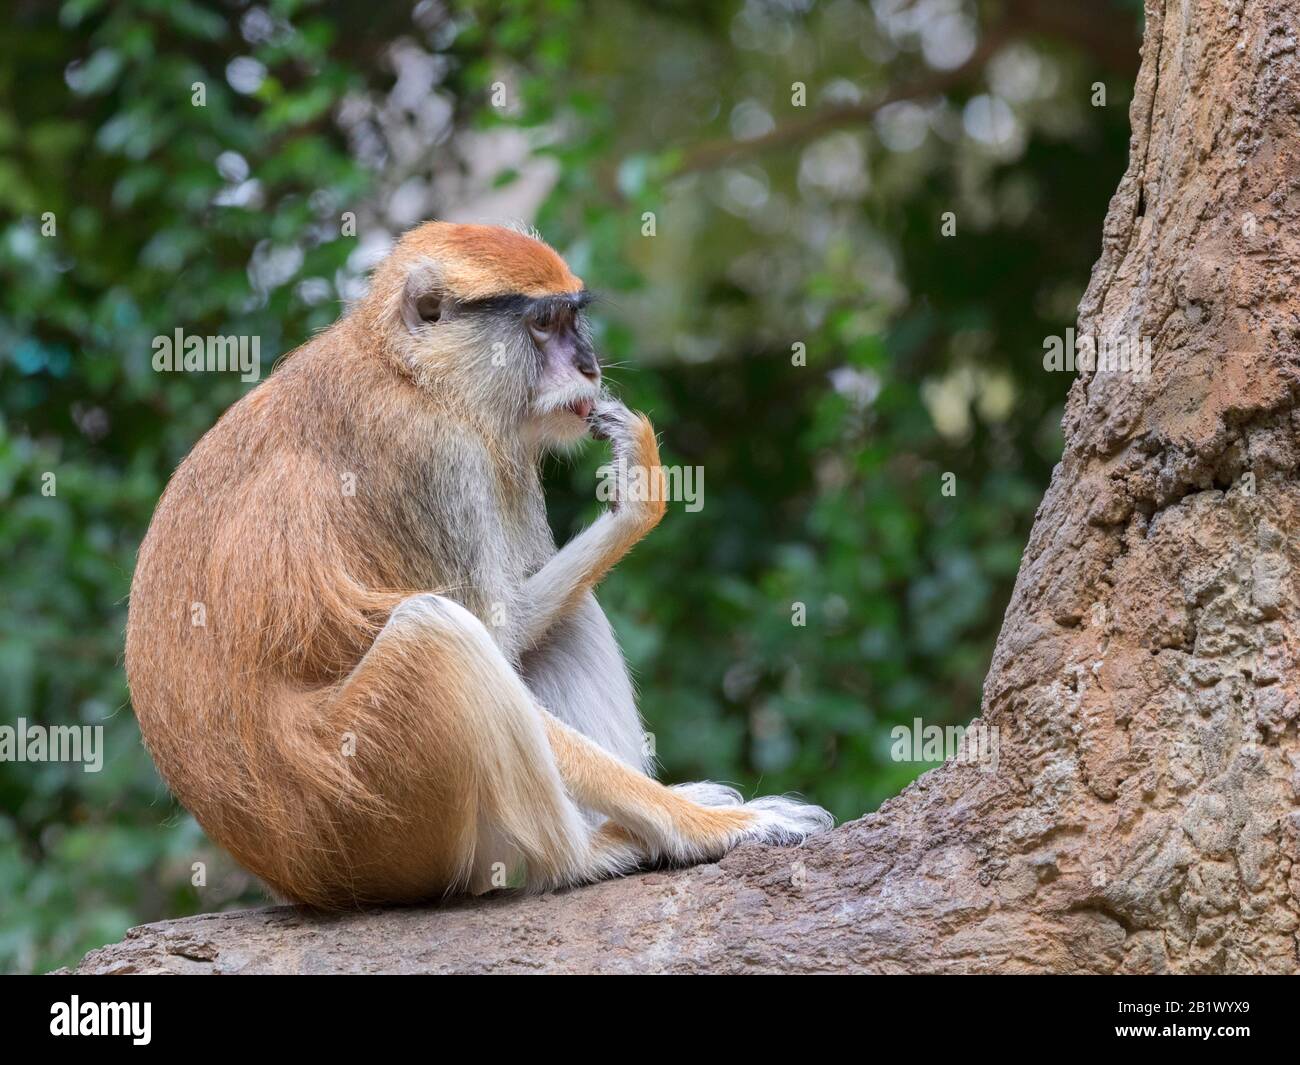 The patas monkey (Erythrocebus patas) Stock Photo